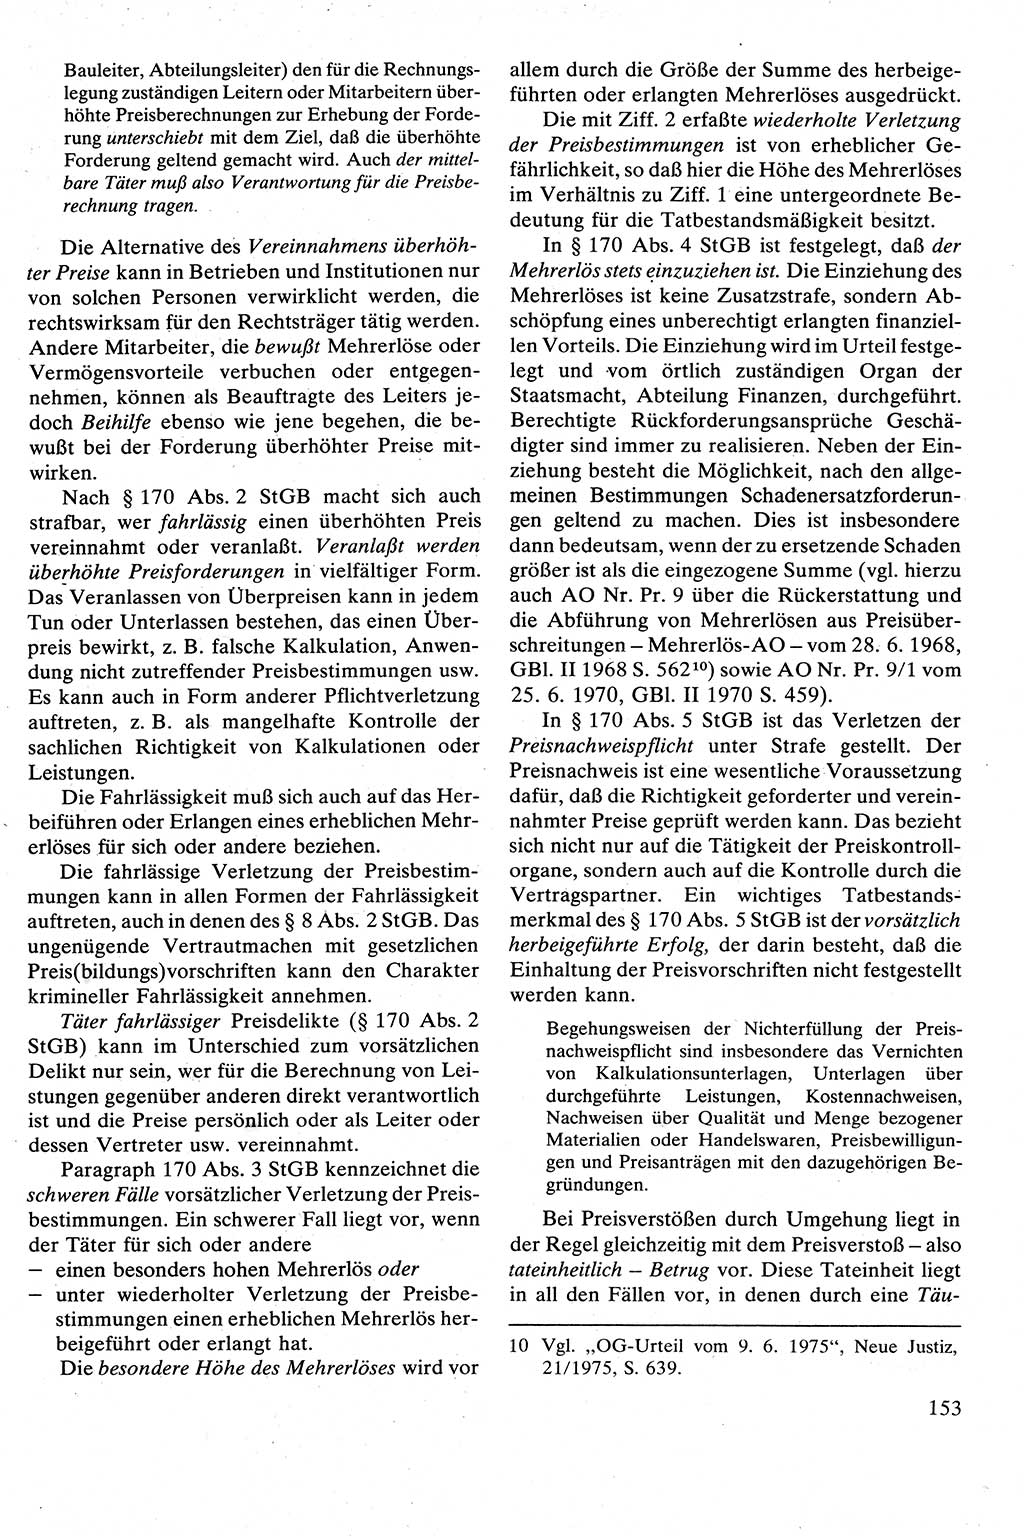 Strafrecht [Deutsche Demokratische Republik (DDR)], Besonderer Teil, Lehrbuch 1981, Seite 153 (Strafr. DDR BT Lb. 1981, S. 153)